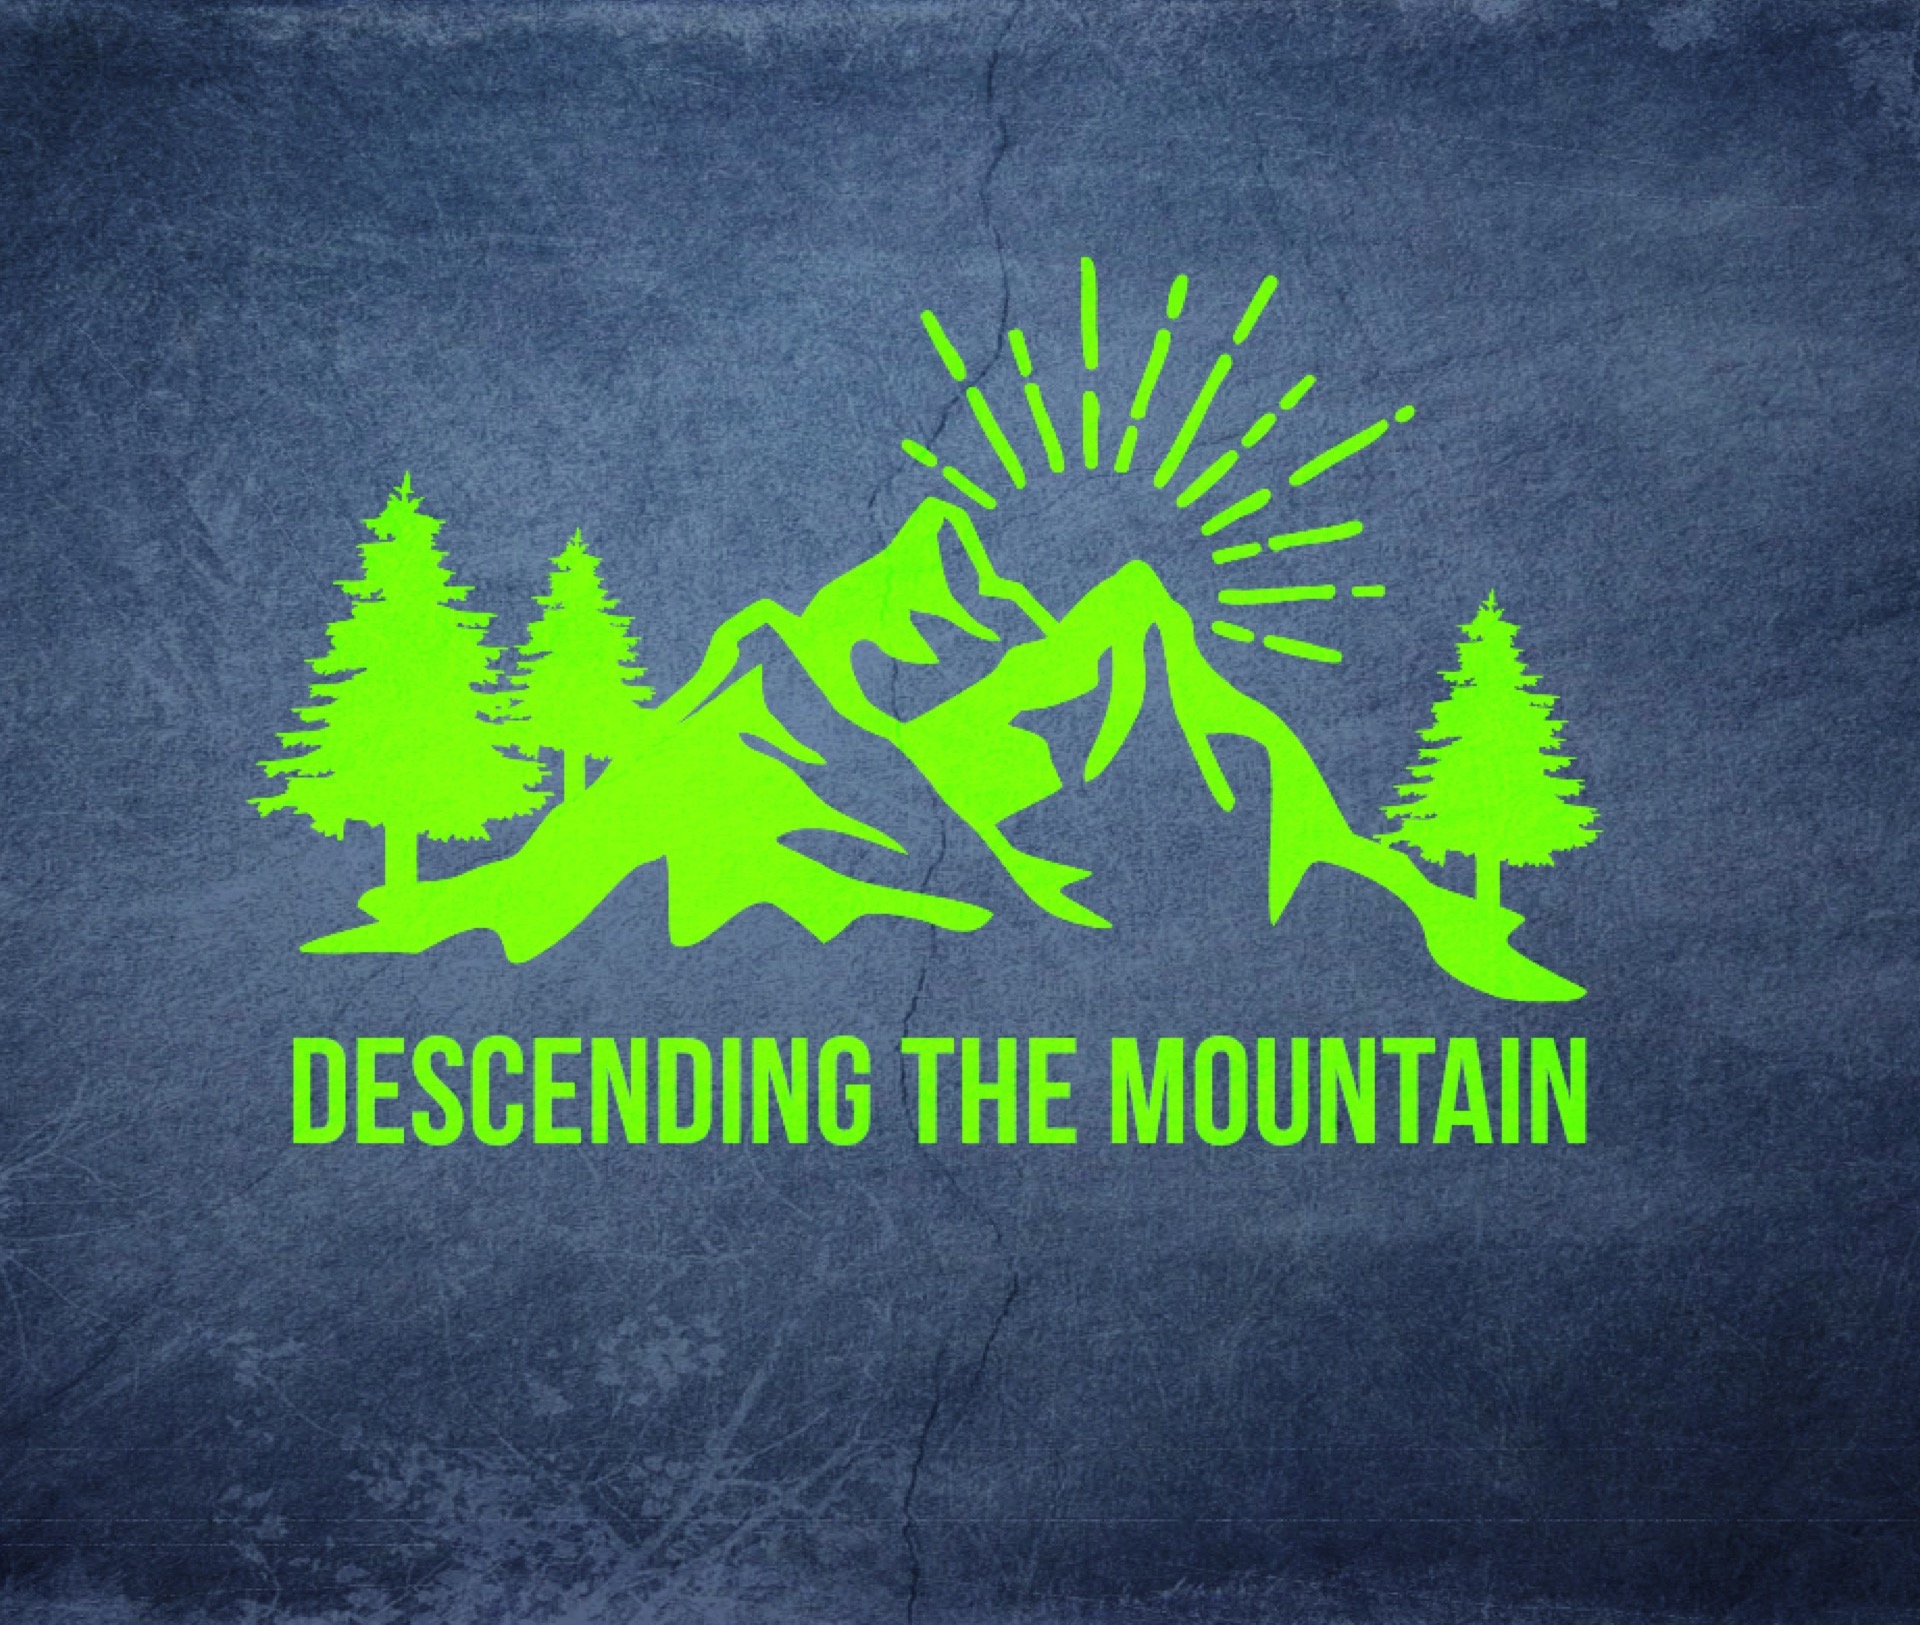 Ryan Post - "Descending the Mountain"